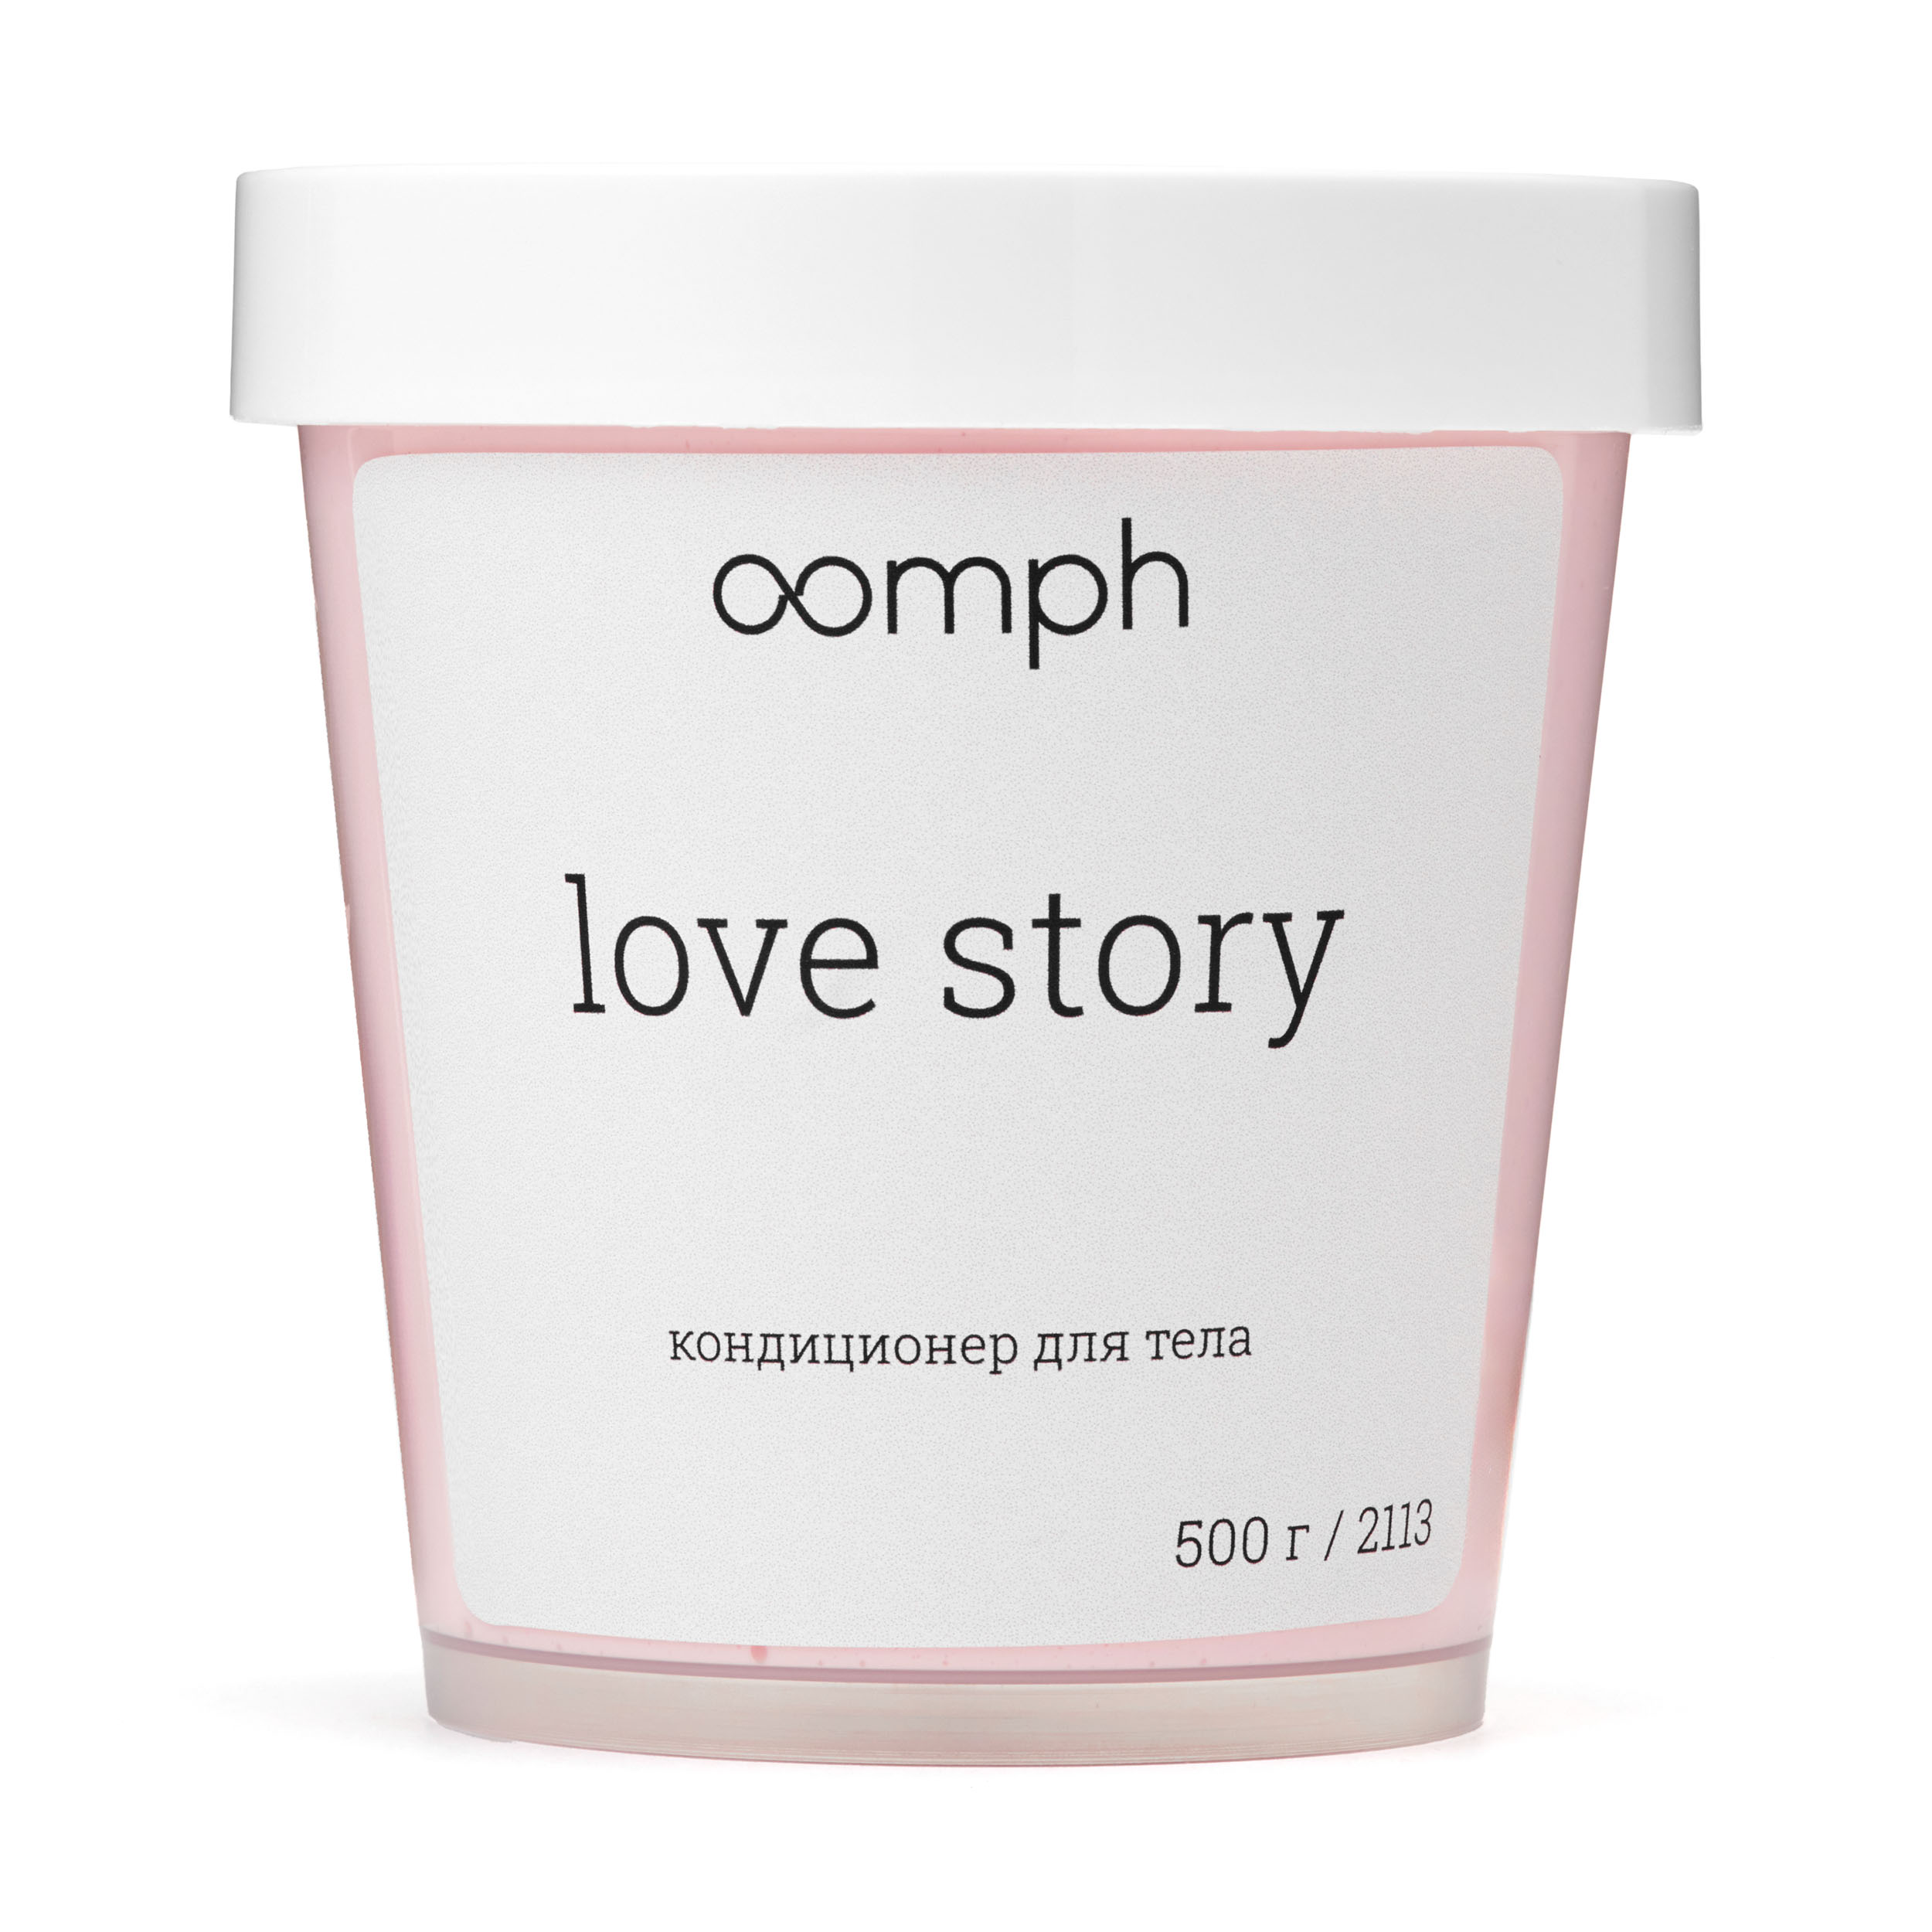 Кондиционер для тела OOMPH Love story 500г кондиционер для тела oomph love story 500г